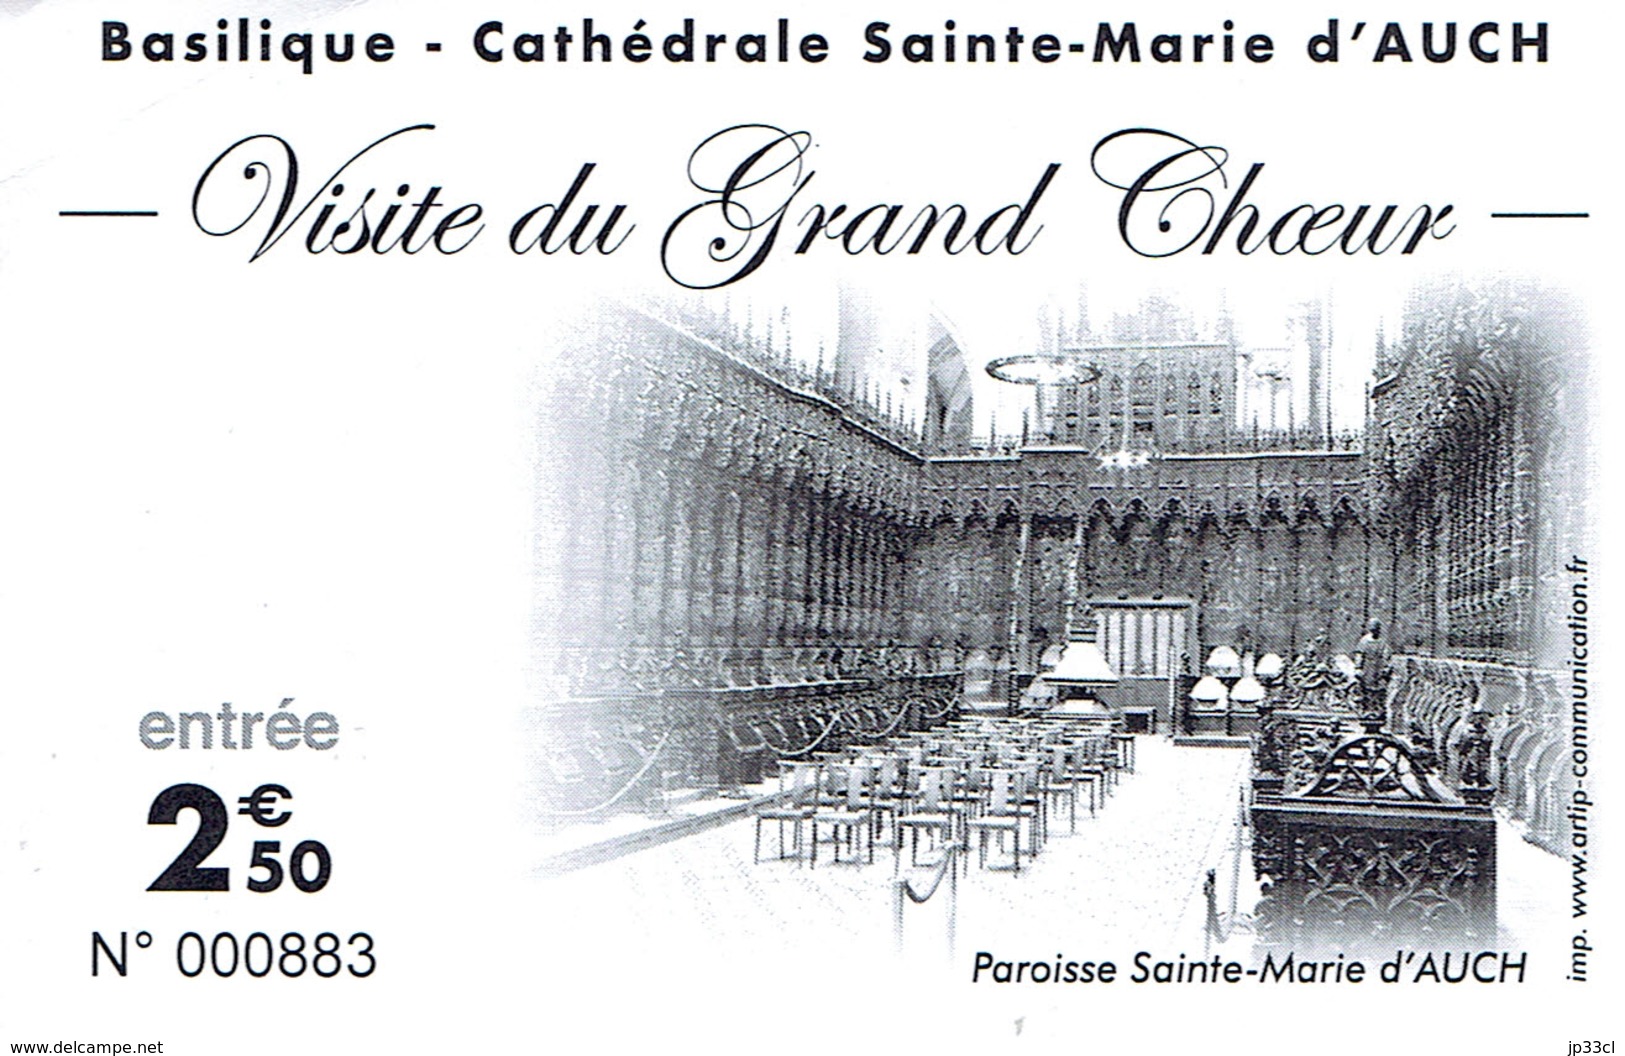 Ticket Billet D'entrée Basilique Cathédrale Saint-Marie D'Auch - Visite Du Choeur - Biglietti D'ingresso